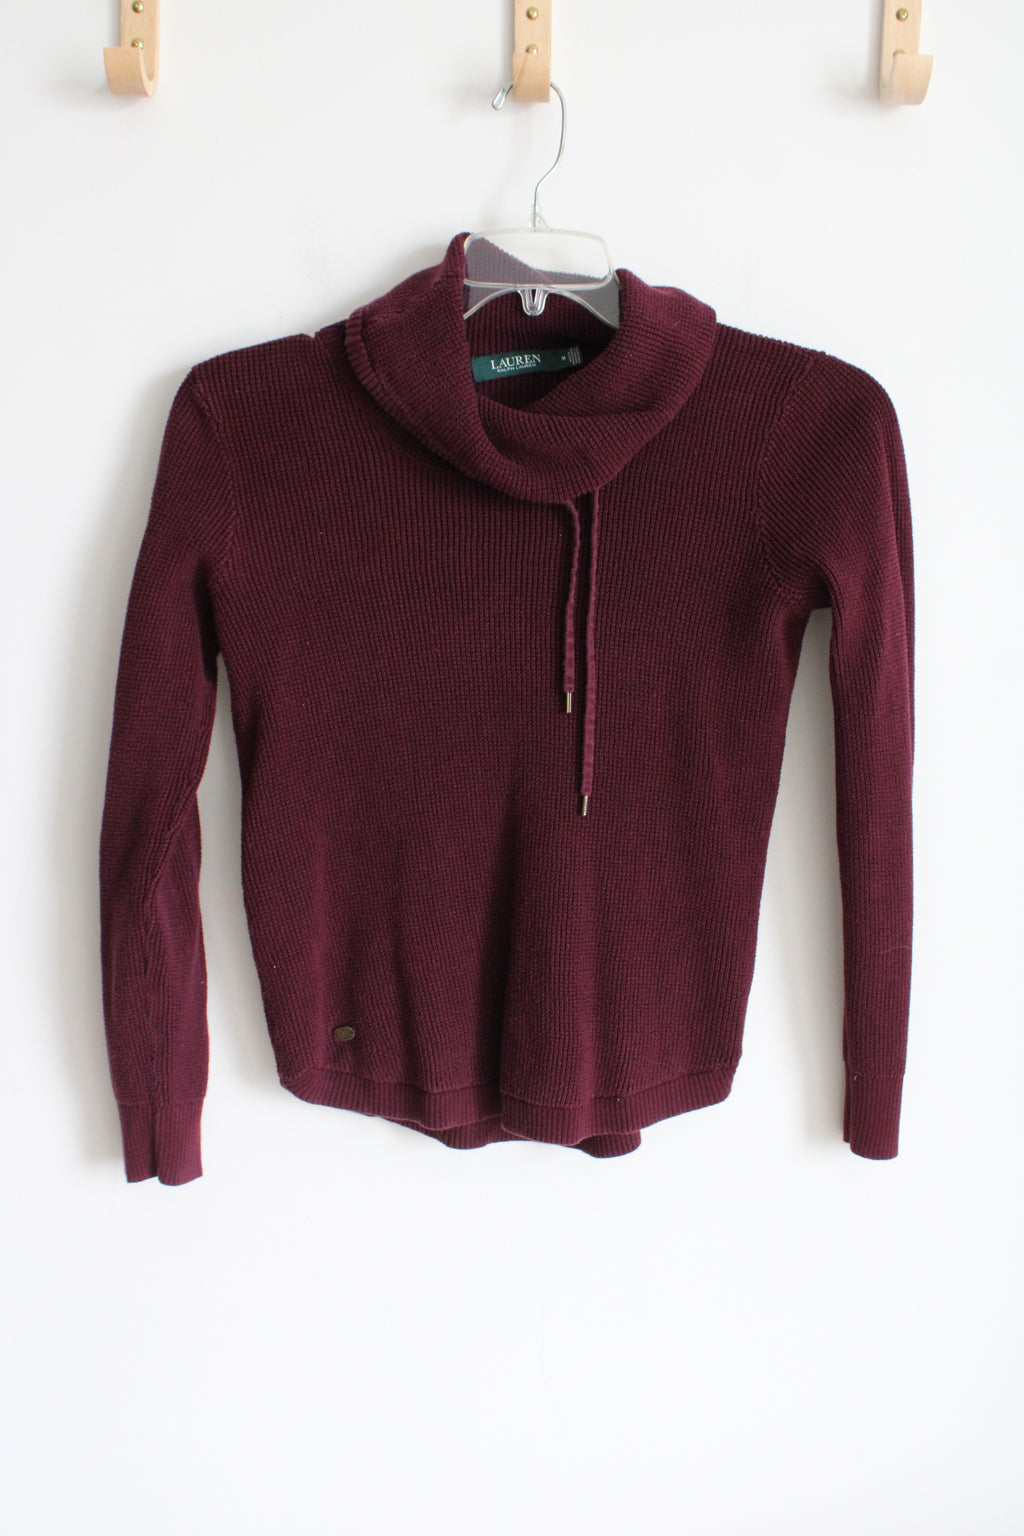 Ralph Lauren Burgundy Knit Cowl Neck Sweater | XS